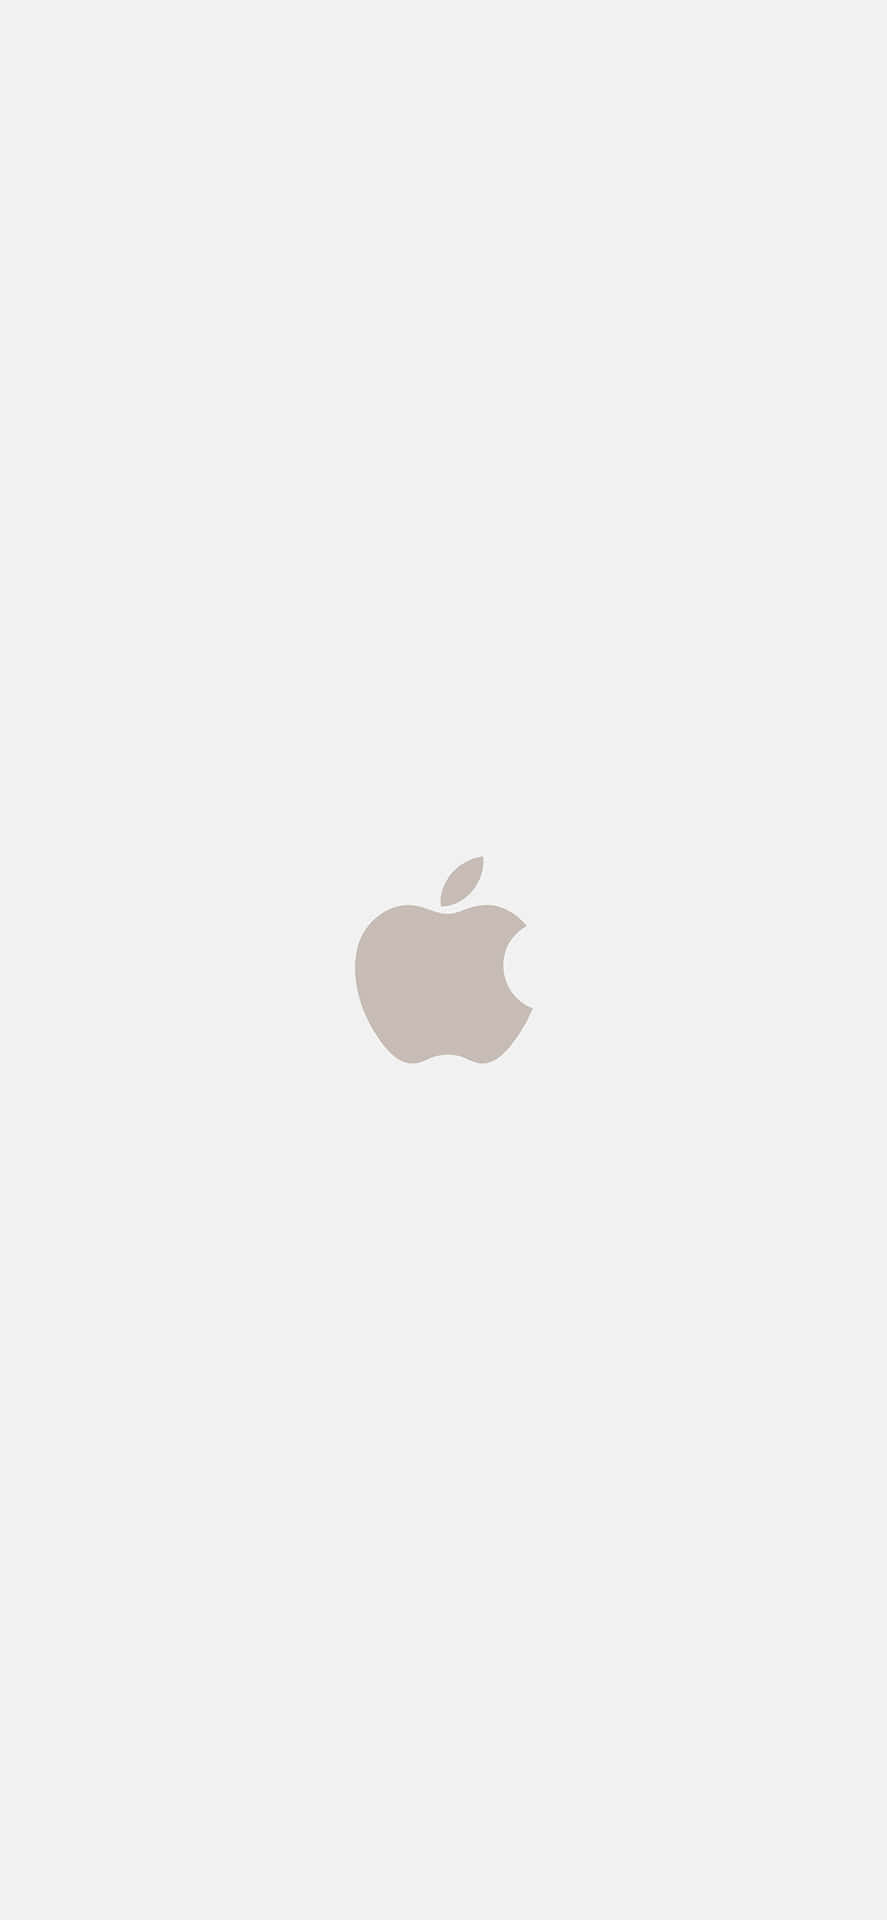 Sfondoper Iphone X Con Logo Apple Color Beige. Sfondo